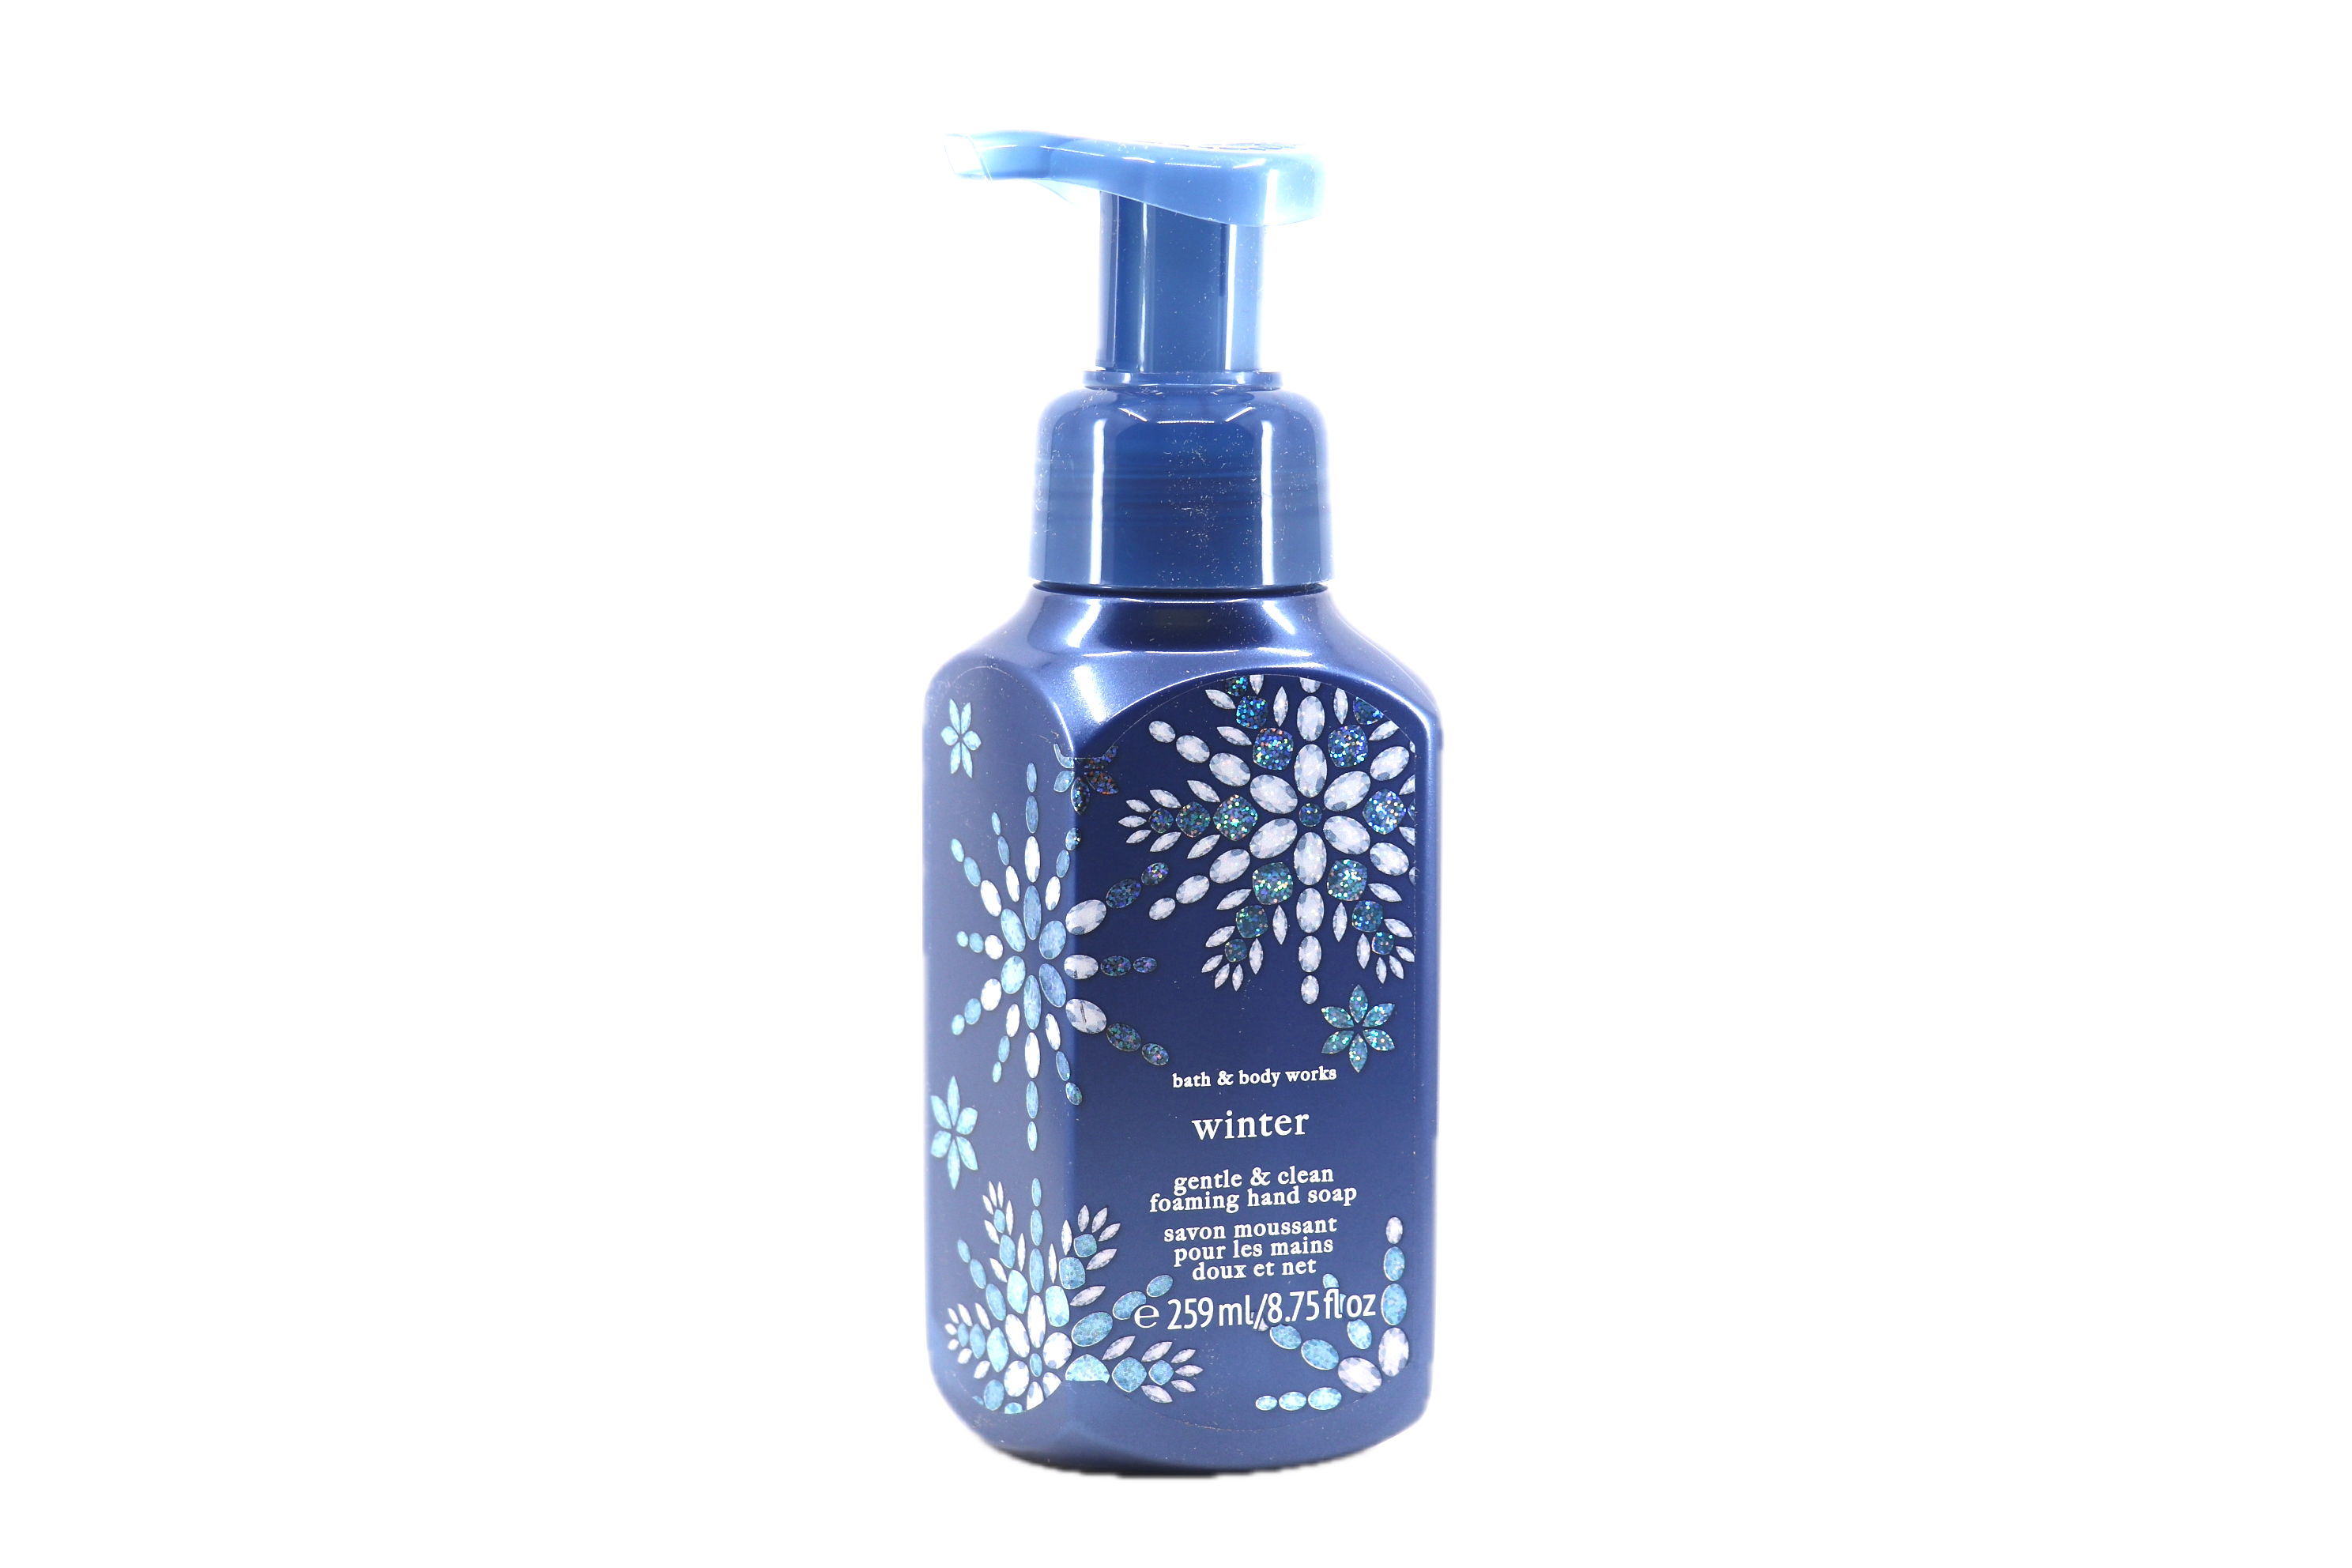 Bath & Body Works Winter Gentle Foaming Hand Soap